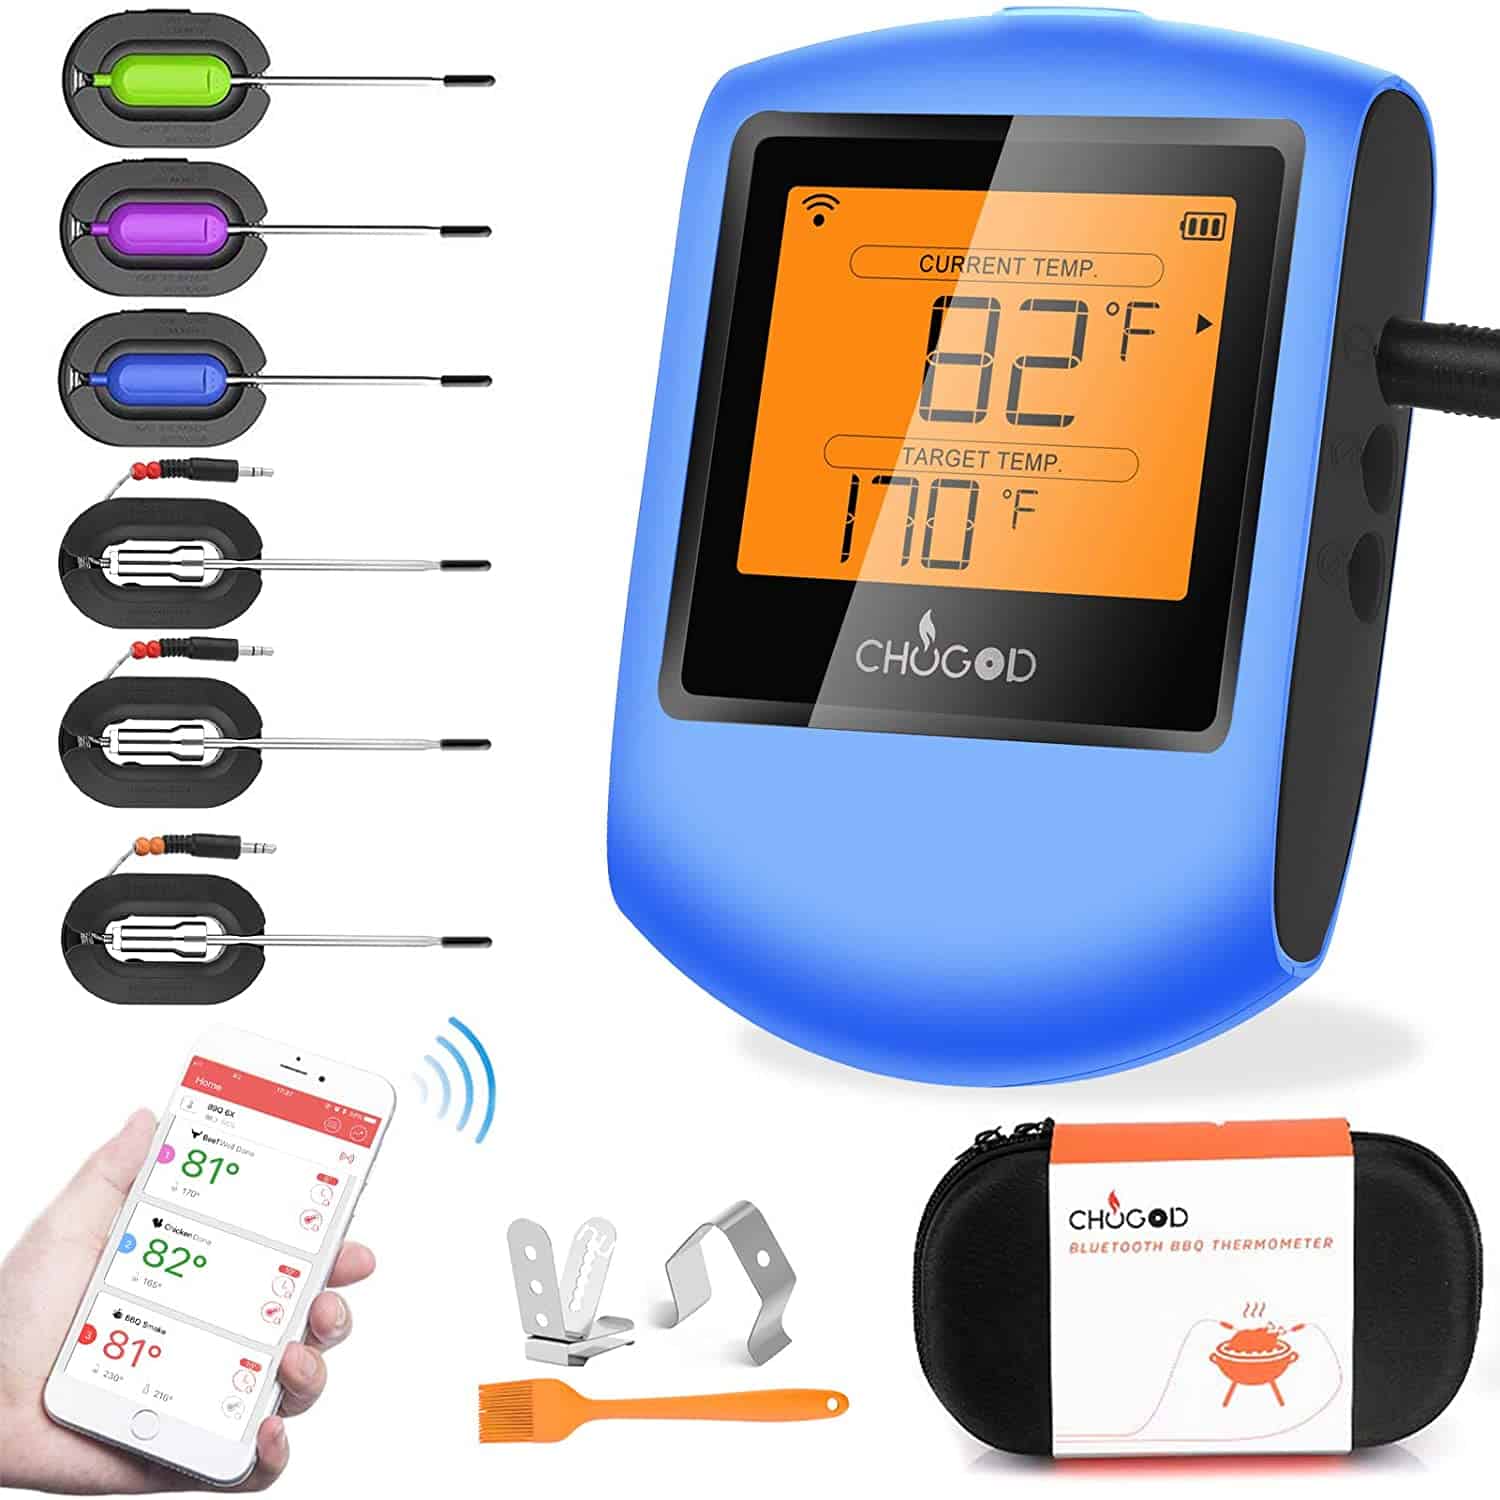 Най-добър 6 сонда Bluetooth термометър за барбекю- Chugod